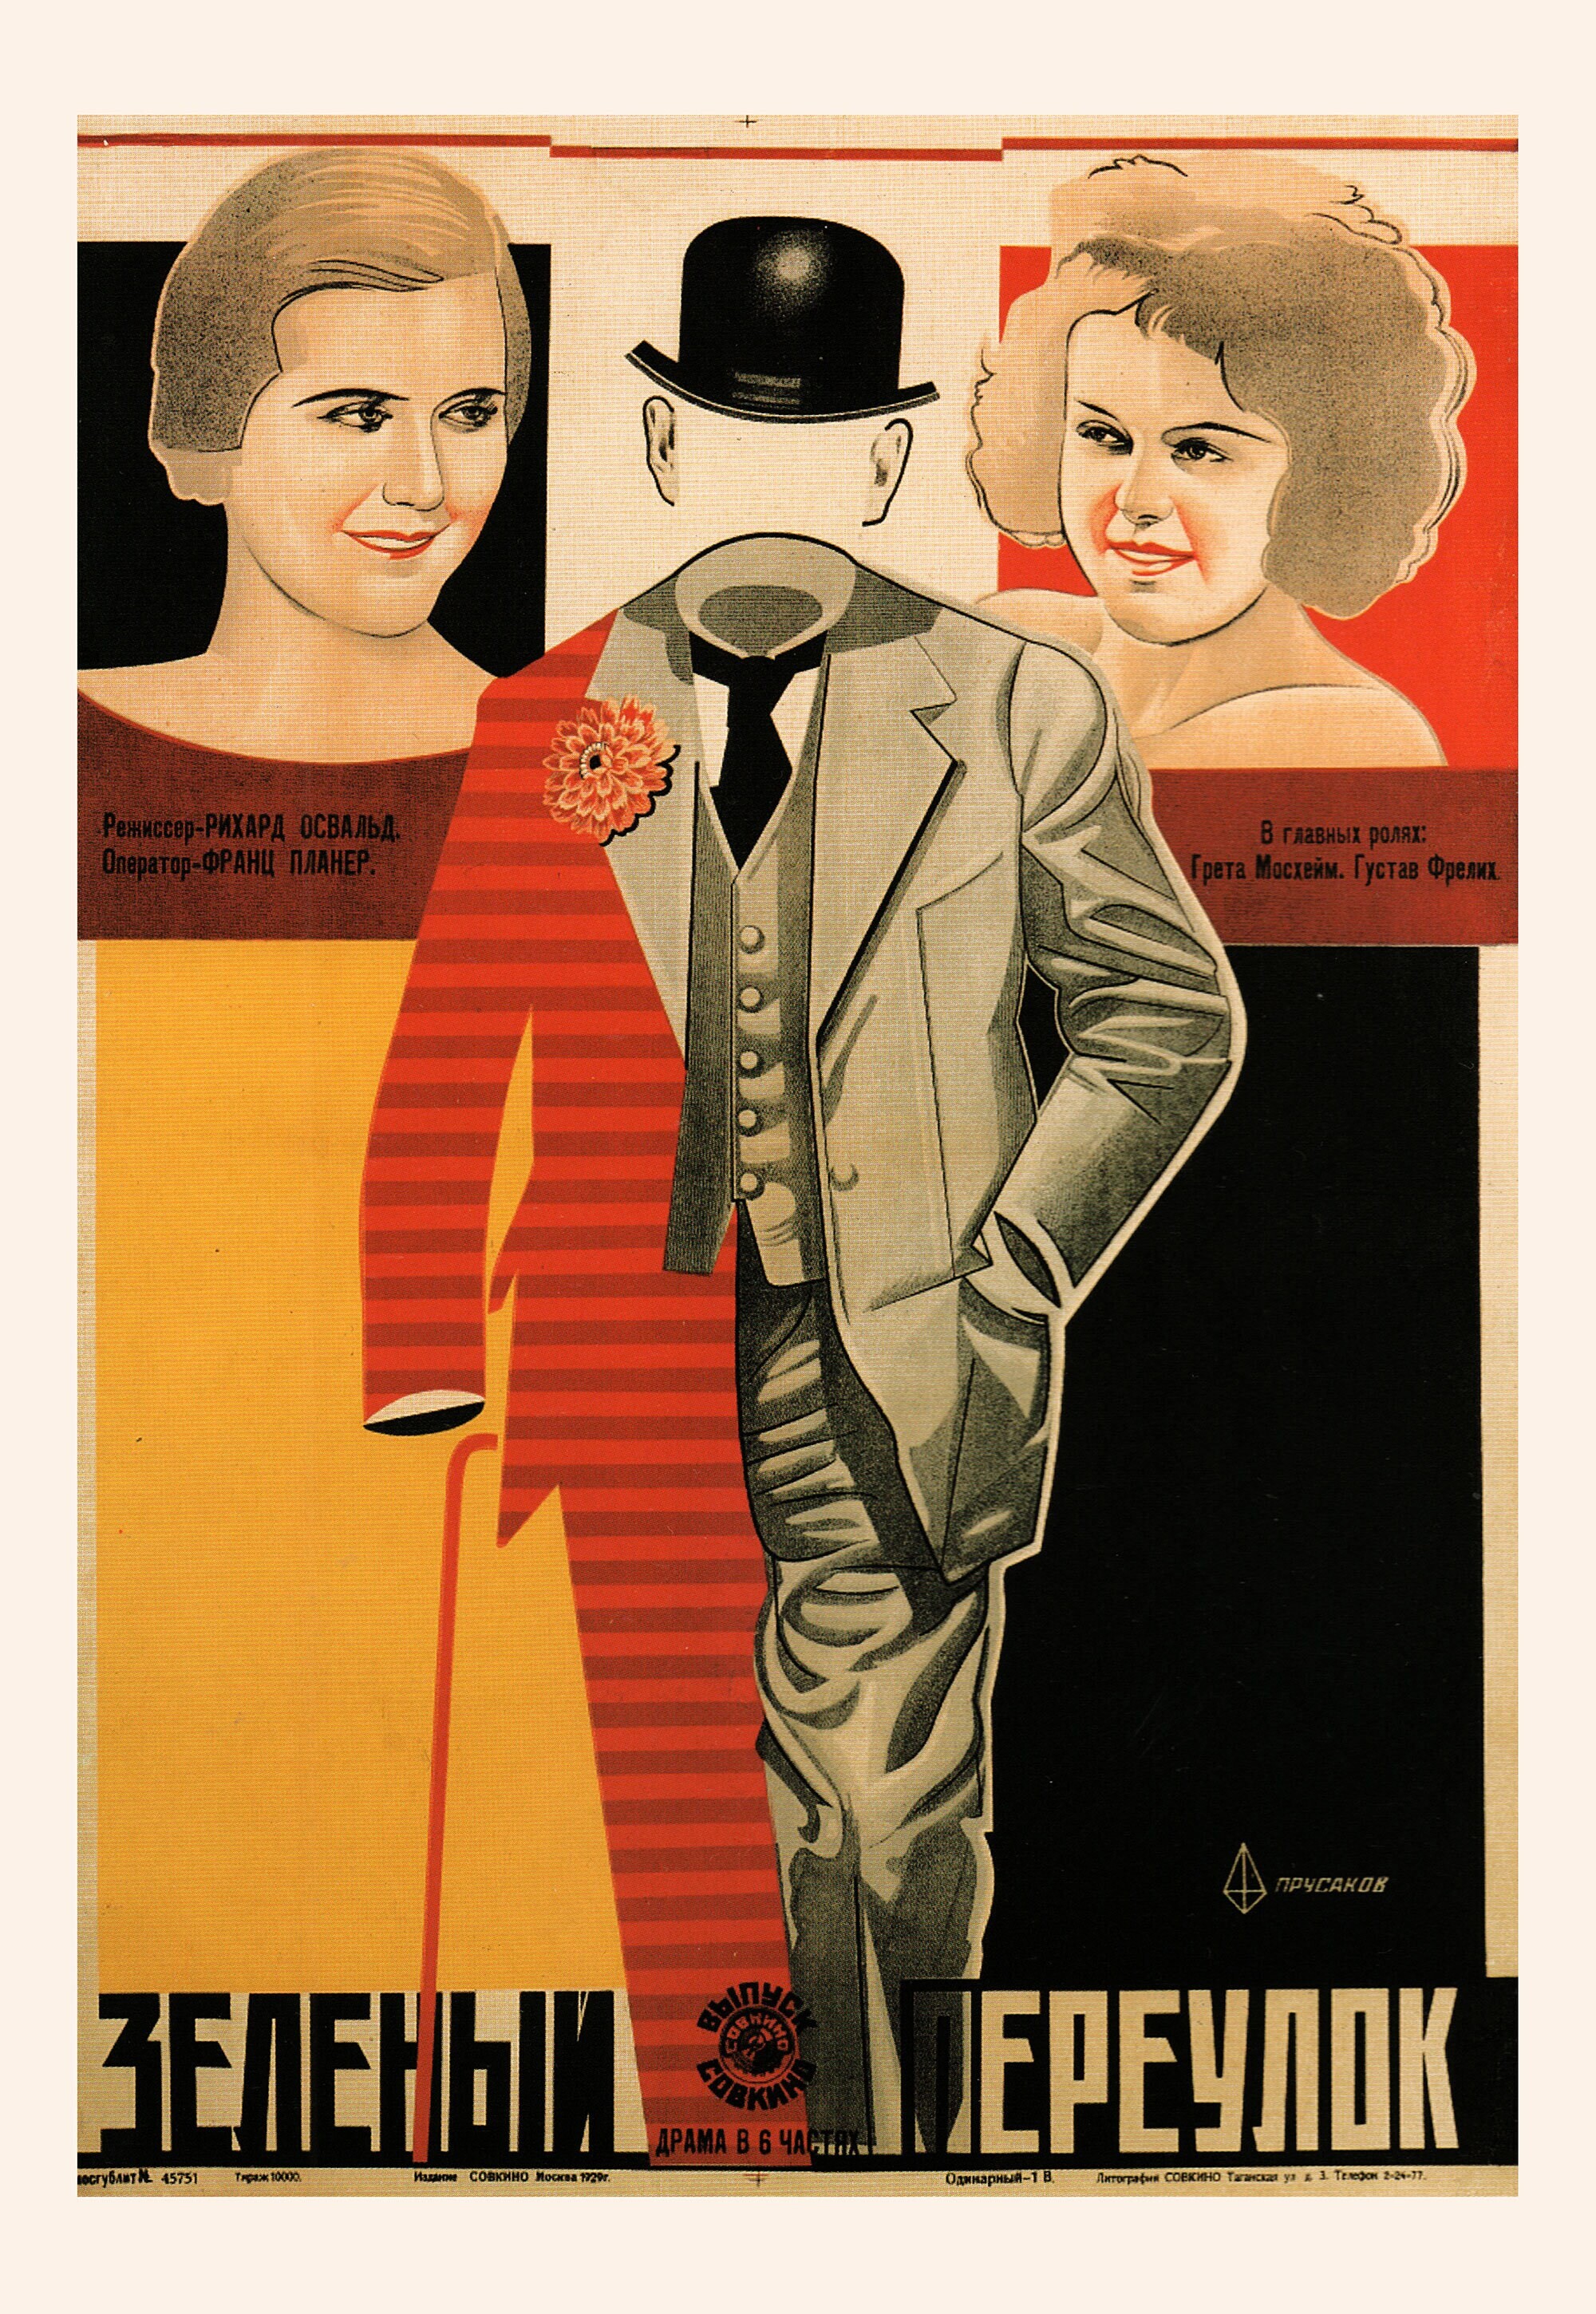 Зеленый переулок, 1928 год, режиссёр Рихард Освальд, плакат к фильму, автор Николай Прусаков (авангардное советское искусство, 1920-е)